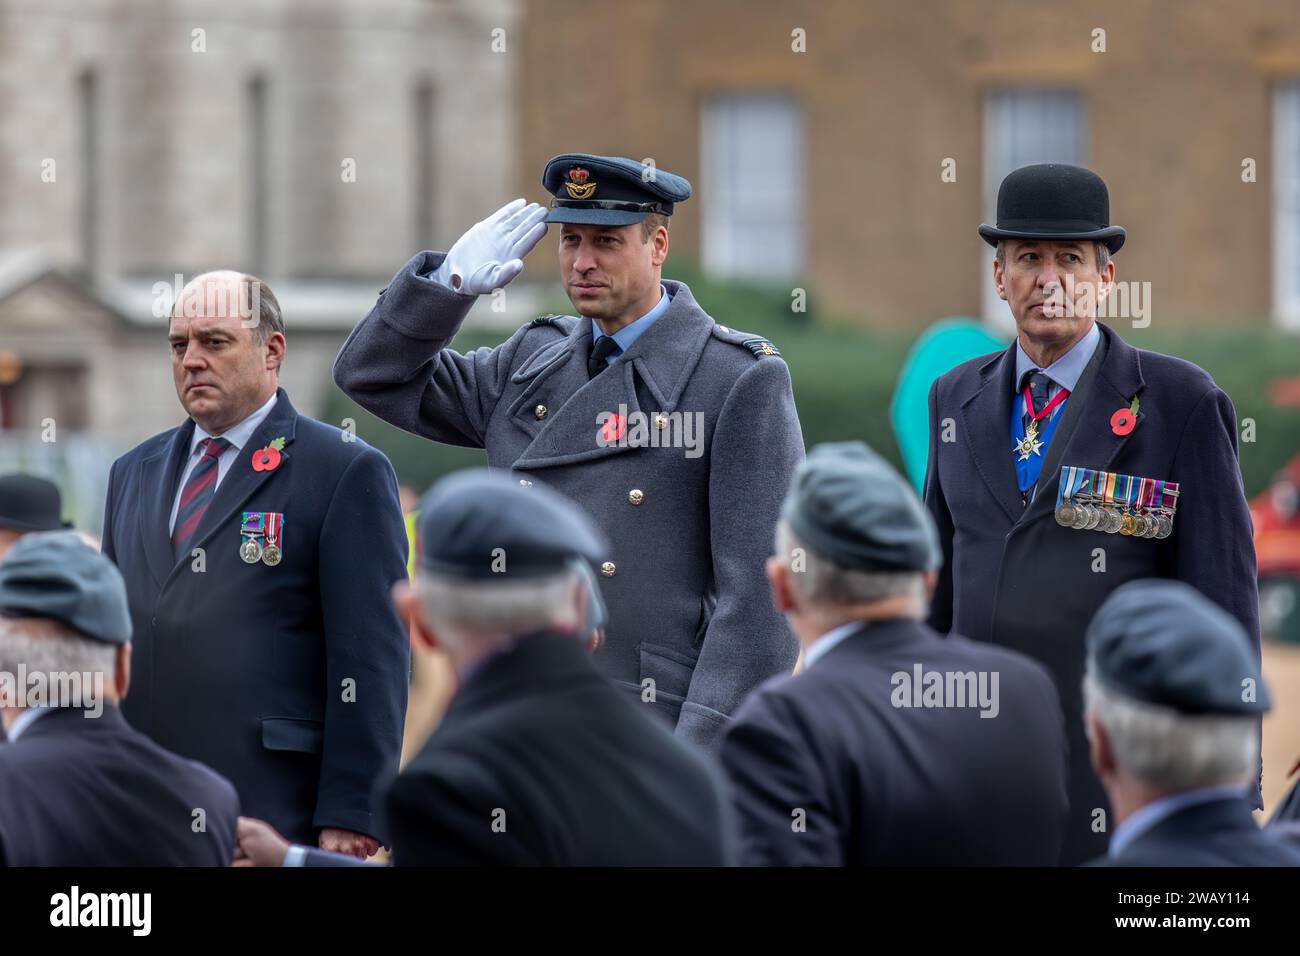 SAR le Prince William prend le salut lors de la parade du dimanche du souvenir, Horse Guards Parade, Londres, Royaume-Uni Banque D'Images